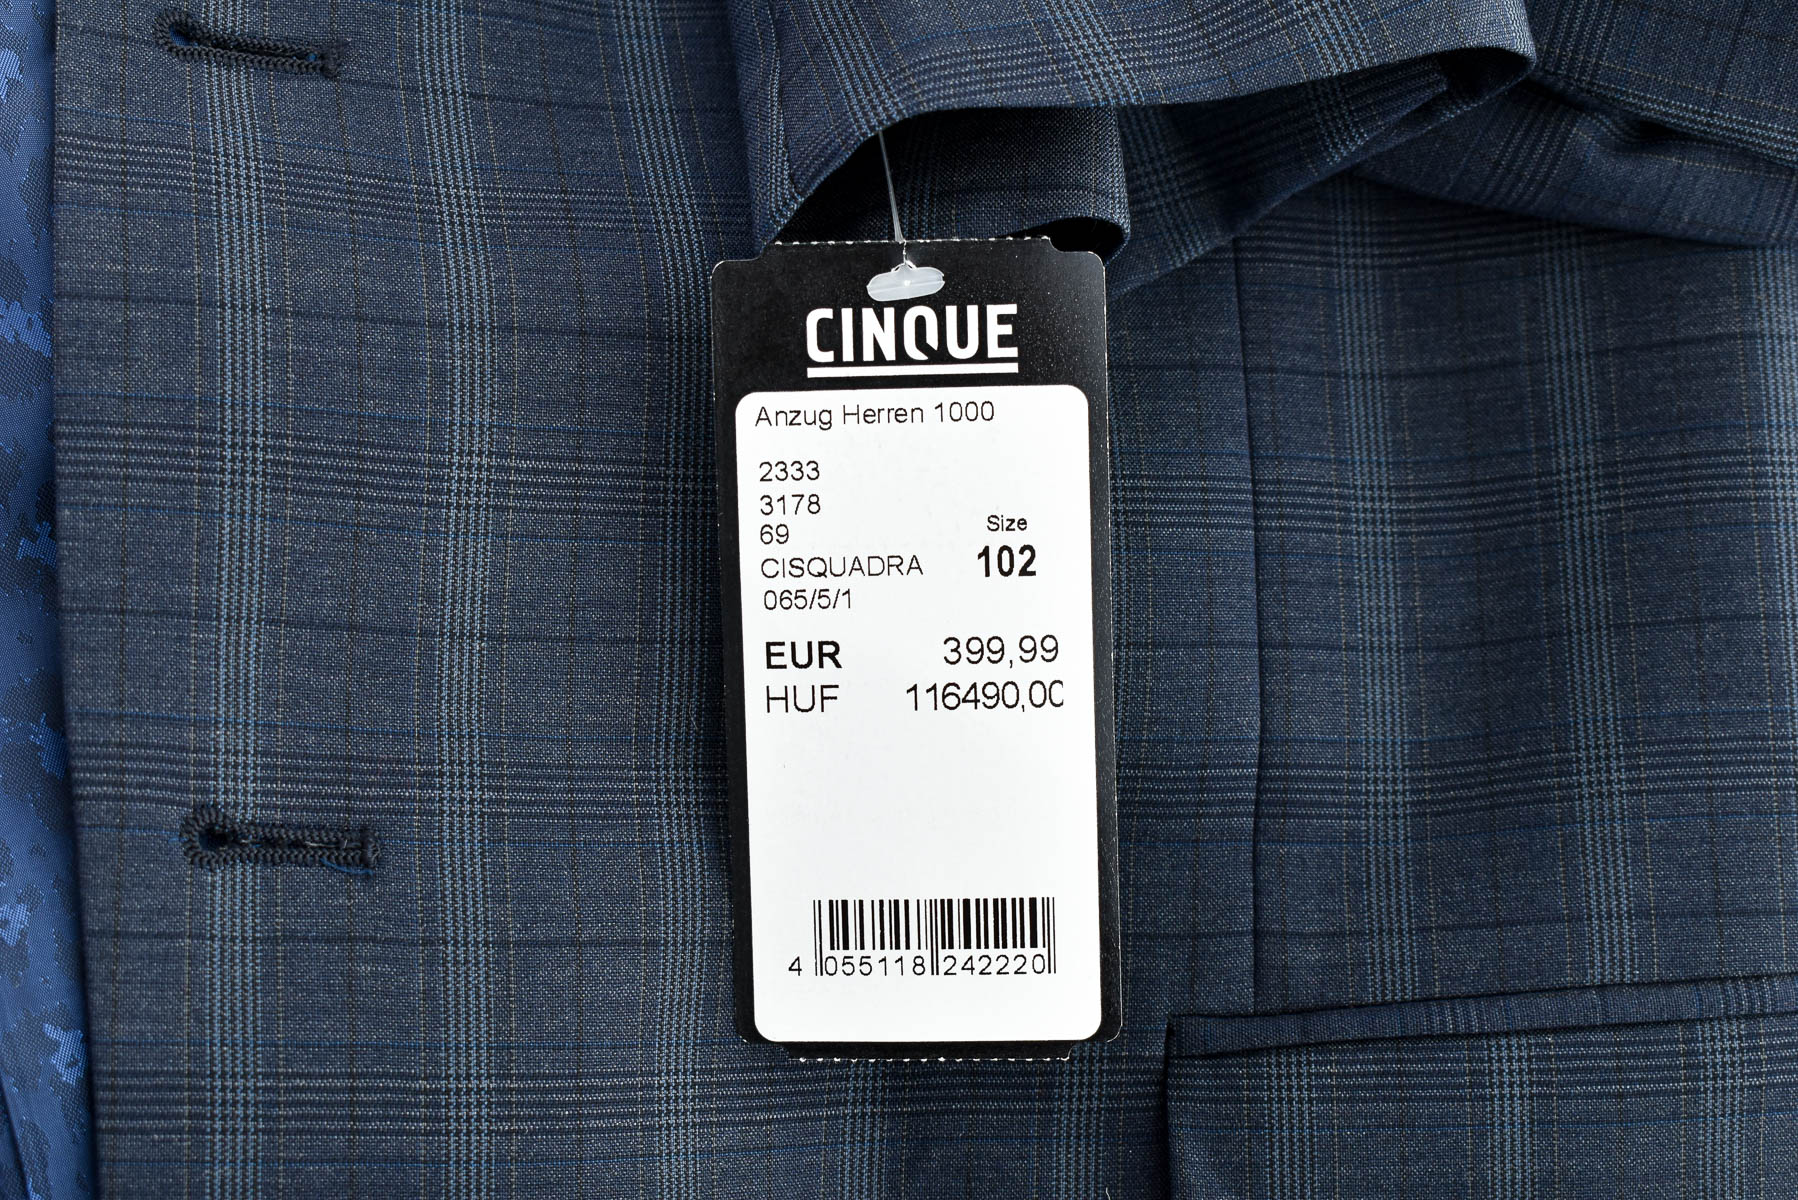 Ανδρικό κοστούμι - CINQUE - 3